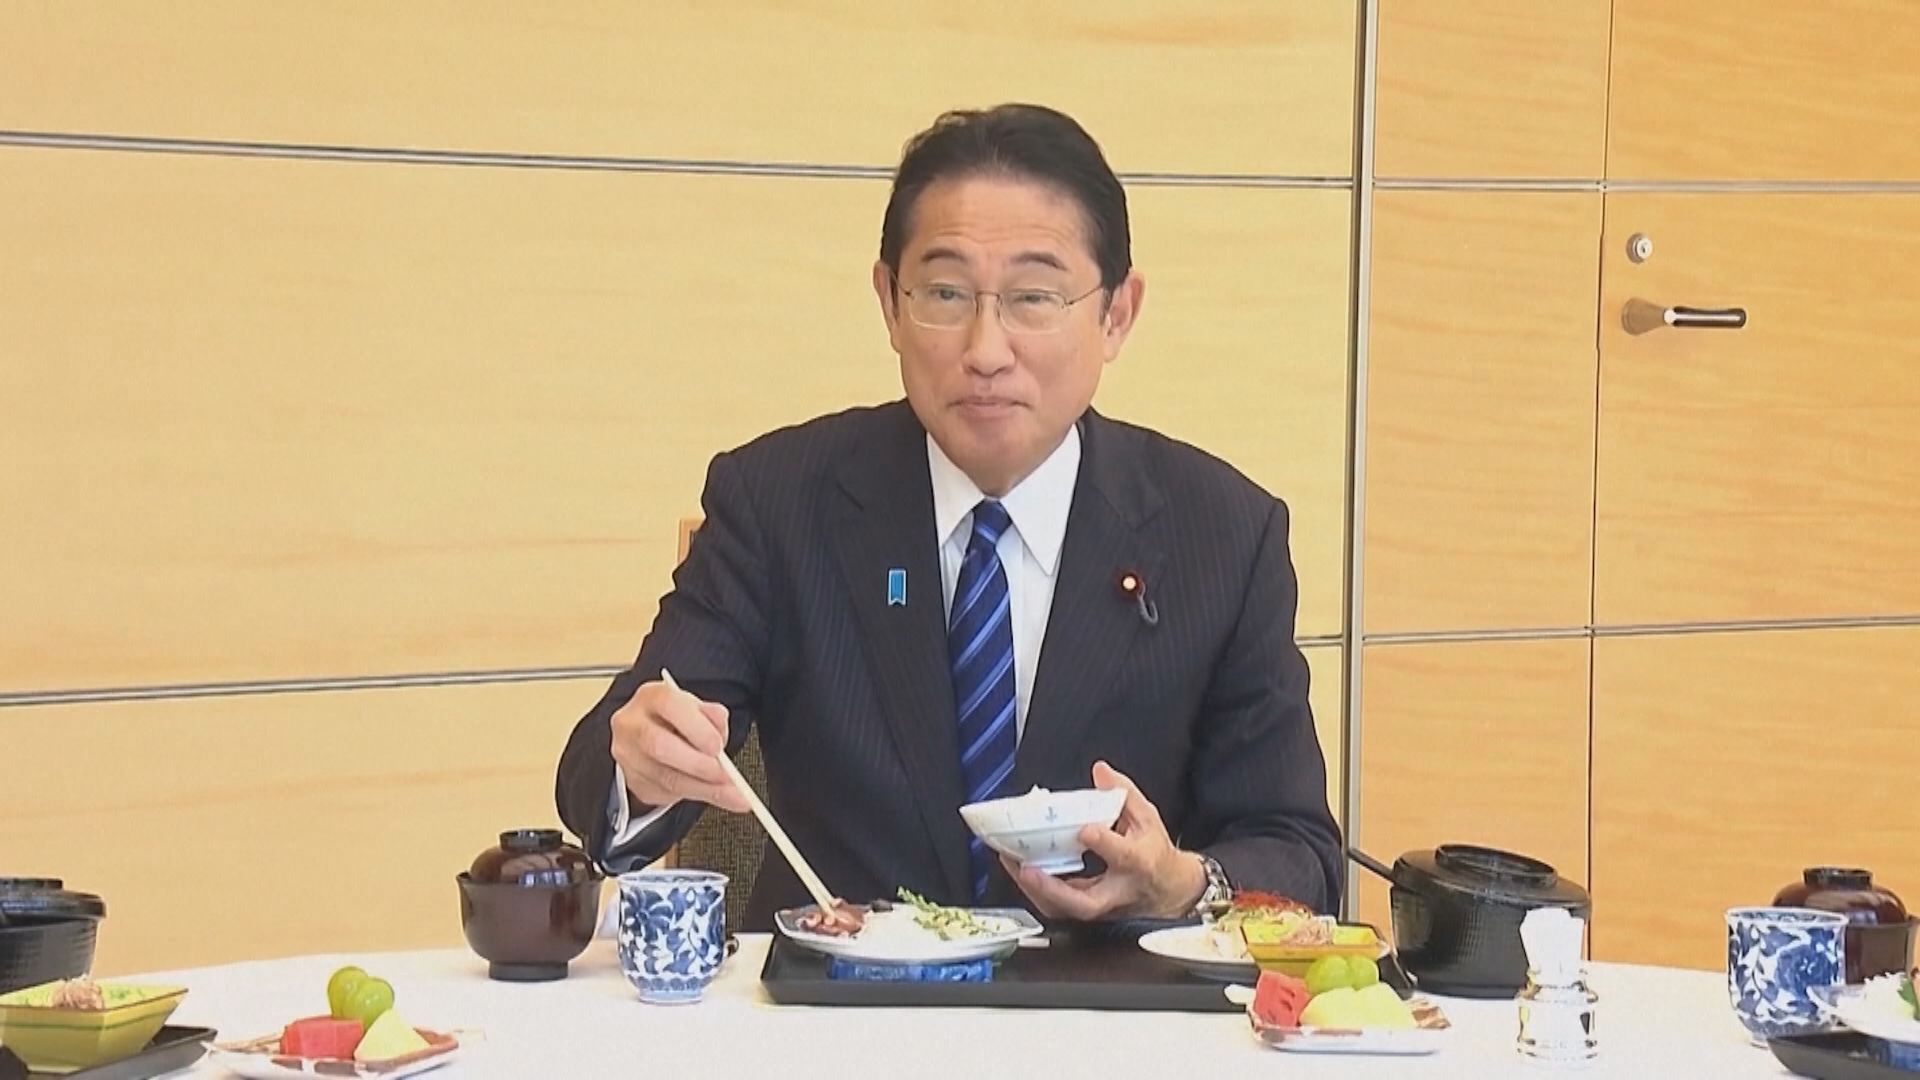 日揆親嚐福島海產強調安全美味 中方指停止進口日本水產品完全正當合理